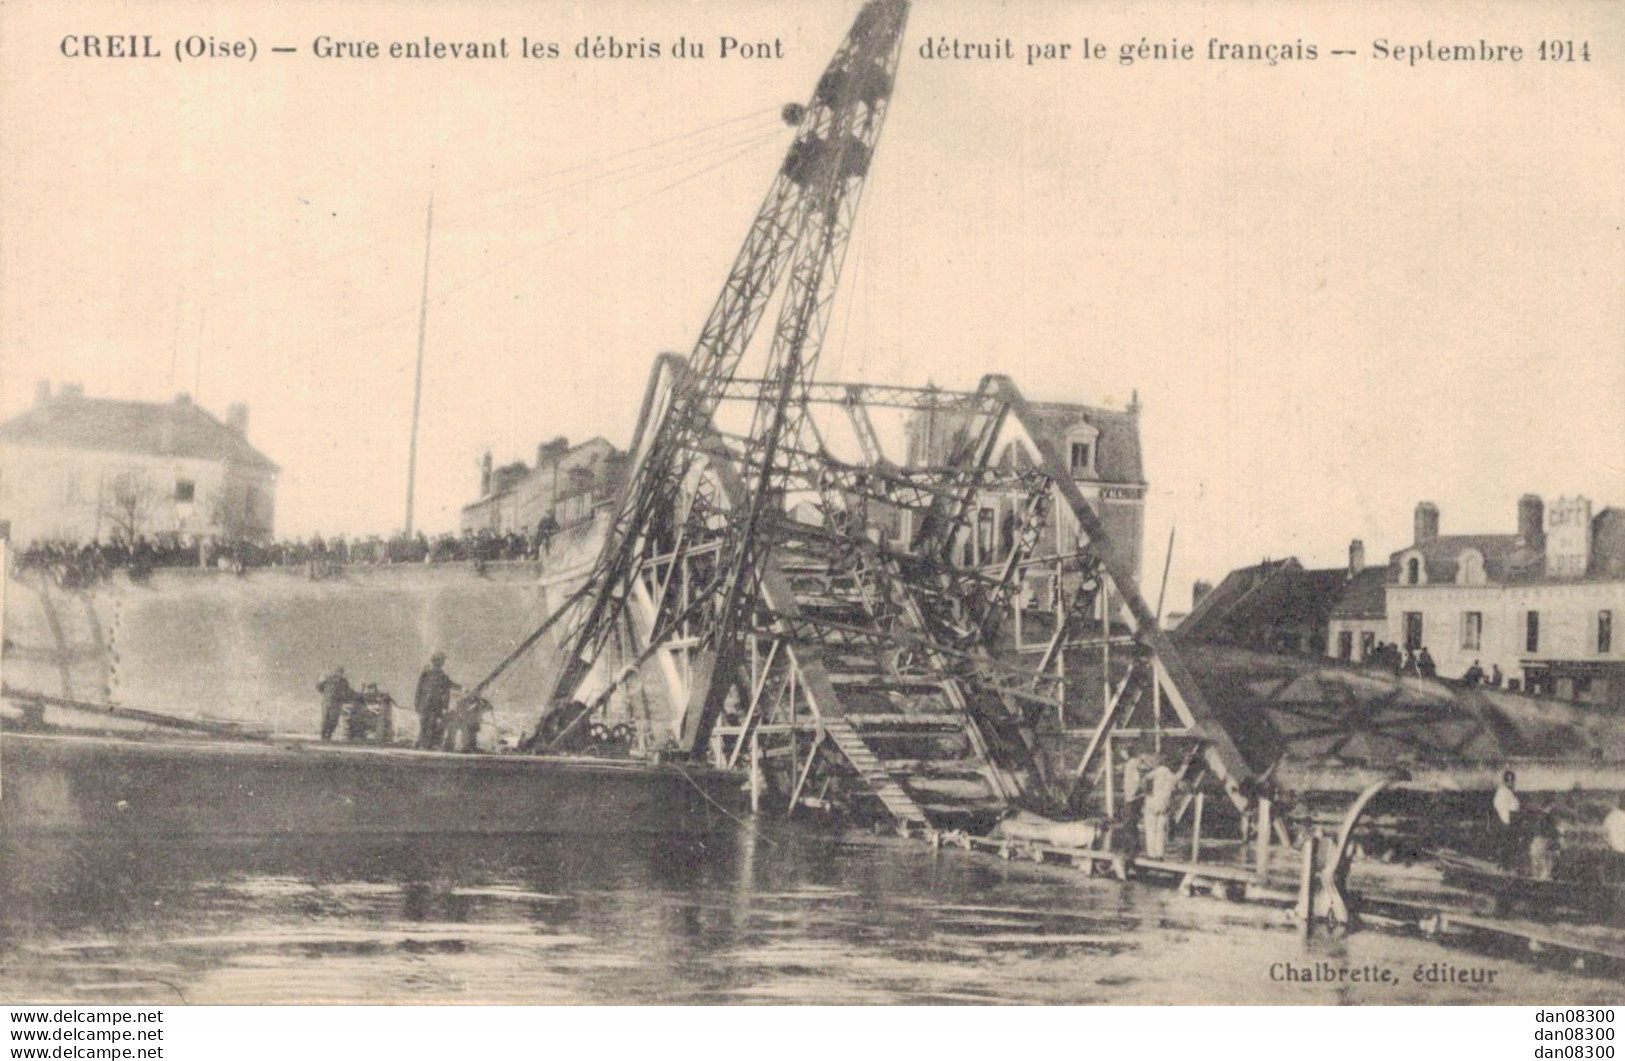 60 CREIL GRUE ENLEVANT LES DEBRIS DU PONT DETRUIT PAR LE GENIE FRANCAIS SEPTEMBRE 1914 - Weltkrieg 1914-18